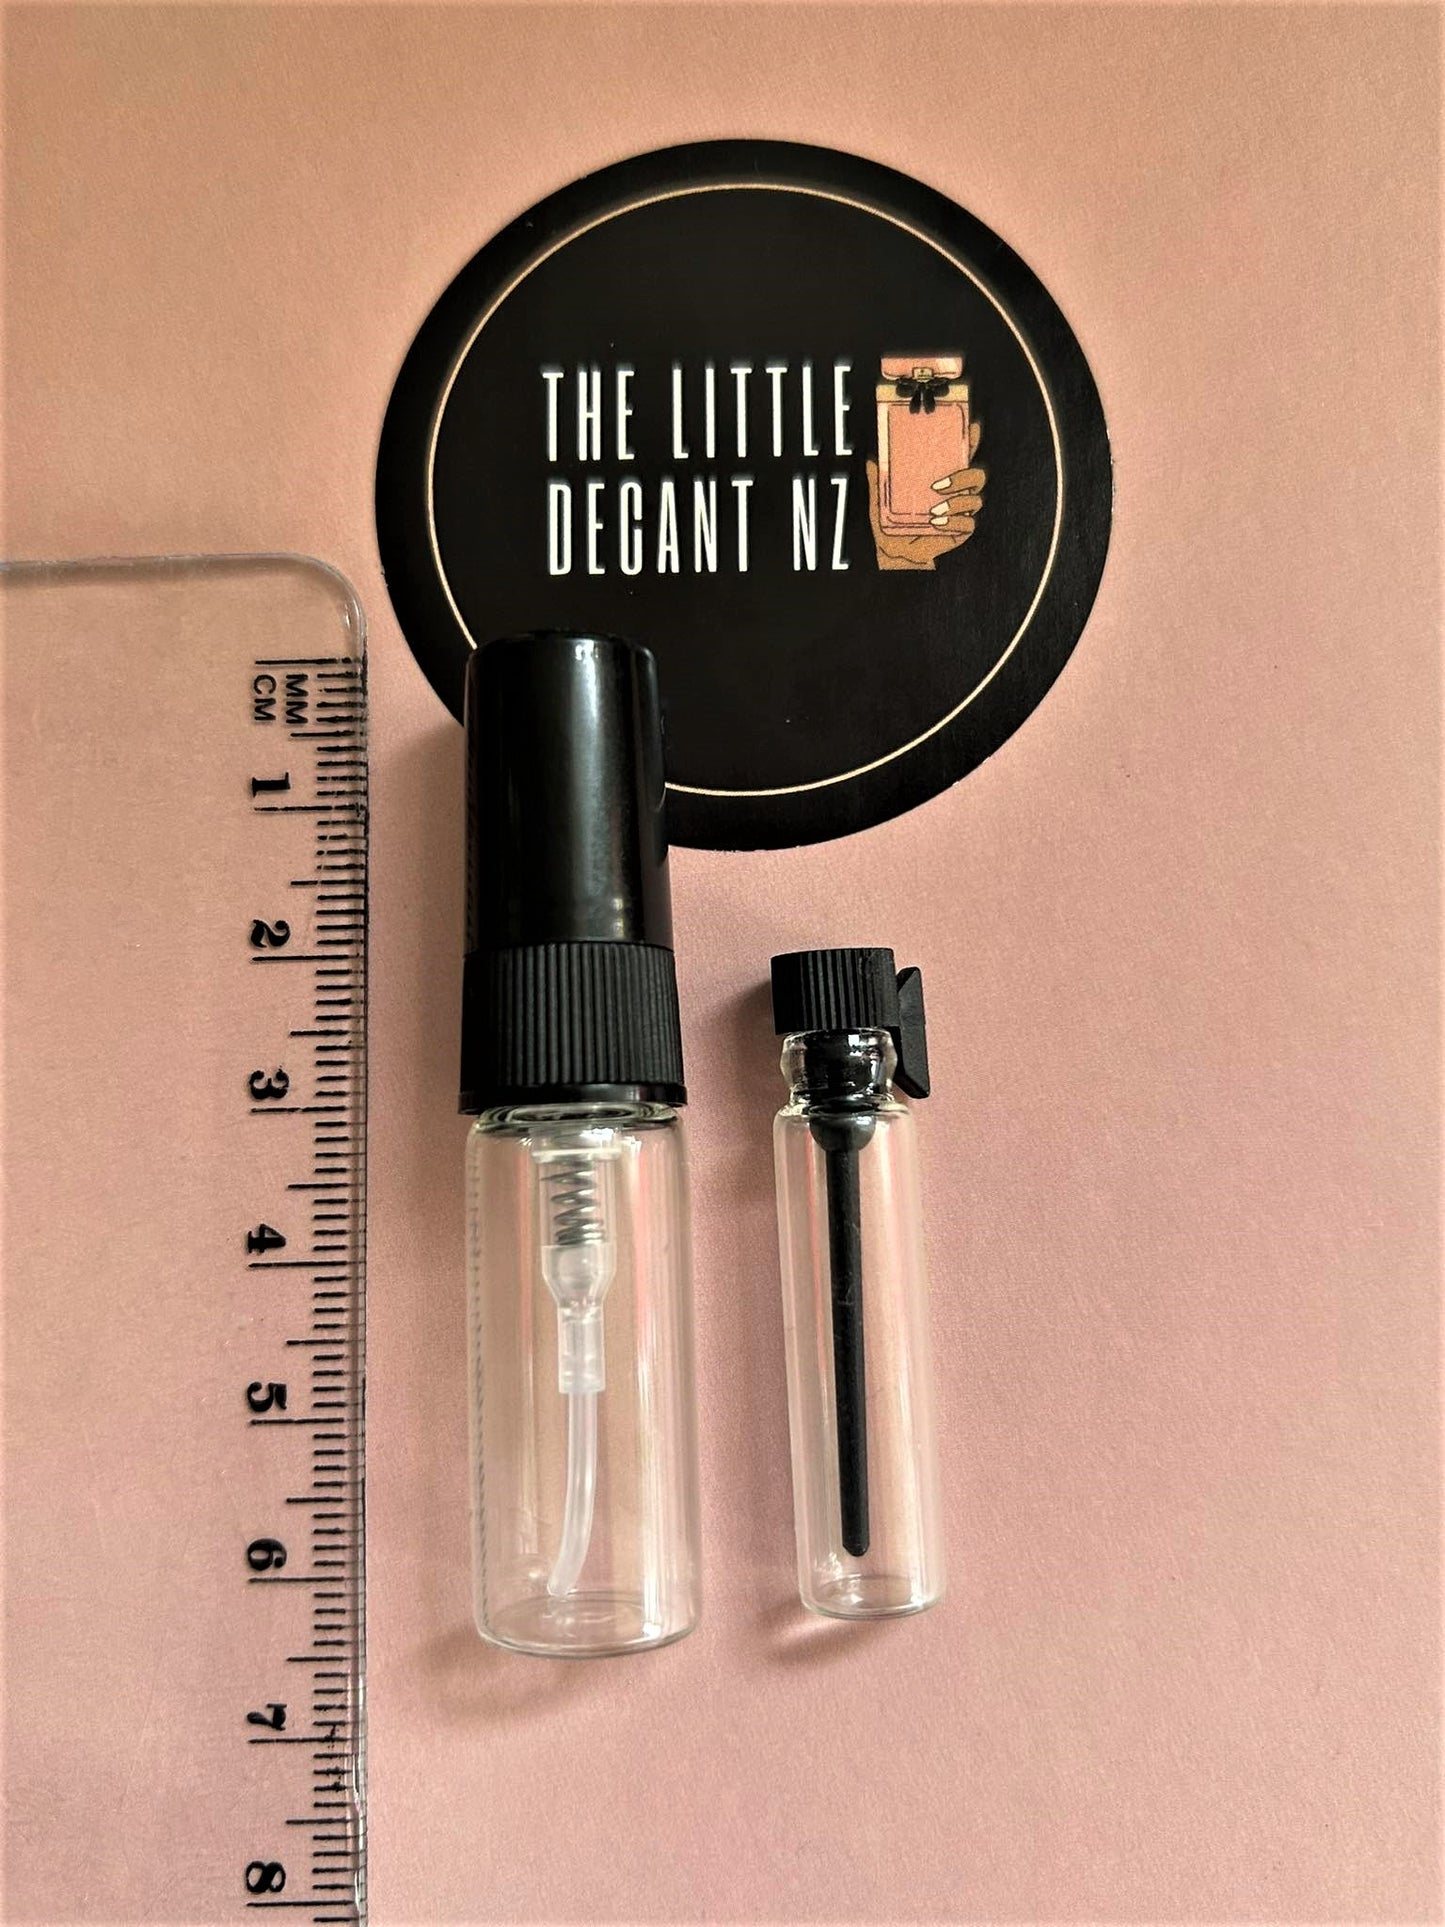 Yves Saint Laurent Libre Le Parfum Sample/Decant